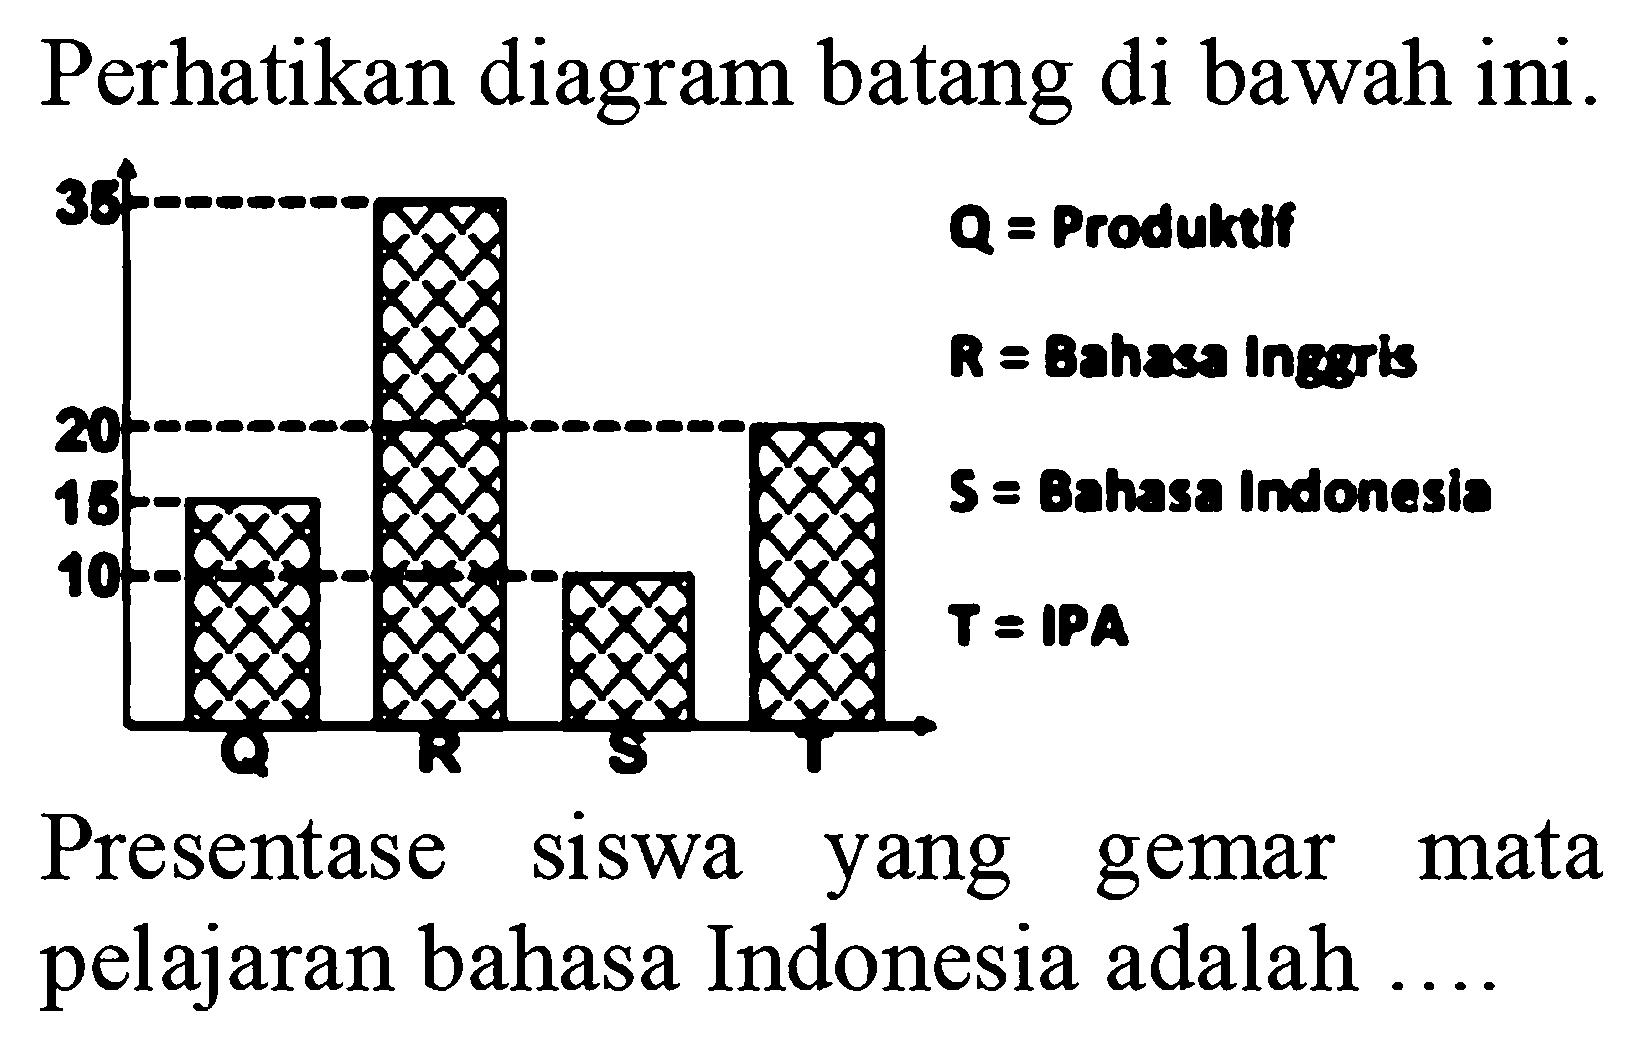 Perhatikan diagram batang di bawah ini.15 Q=Produktif35 R=Bahasa Inggris10 S=Bahasa Indonesia20 T=IPAPresentase siswa yang gemar mata pelajaran bahasa Indonesia adalah ....